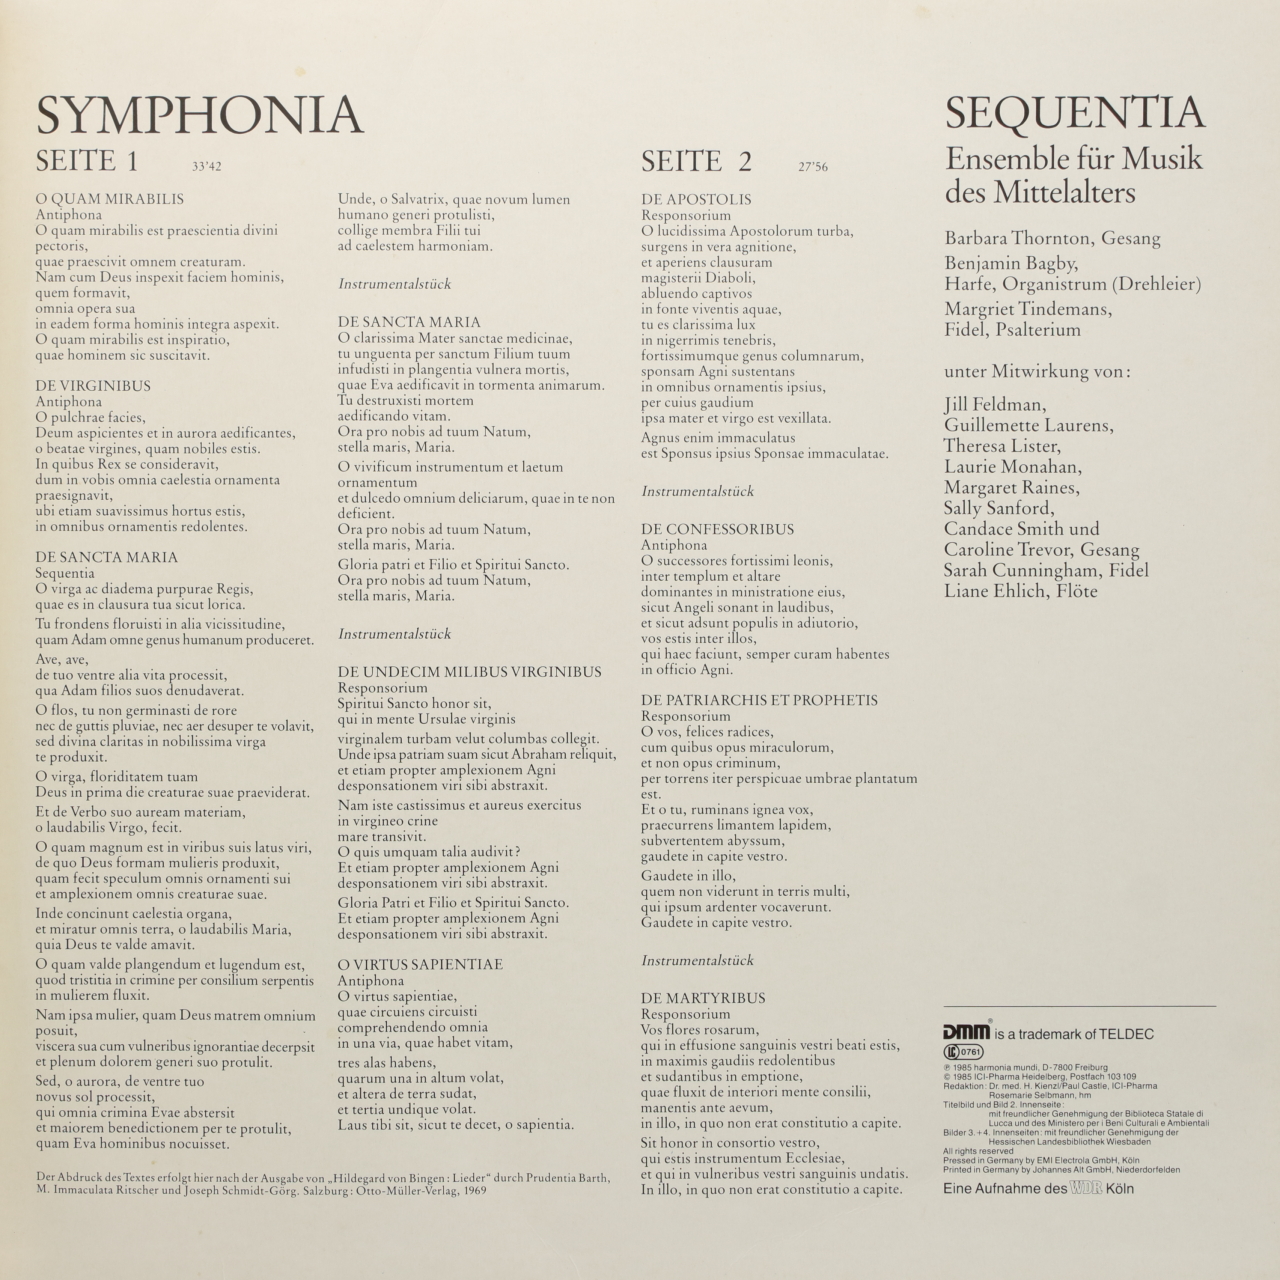 Von Bingen: Musica Medicina - Symphonialis est Anima